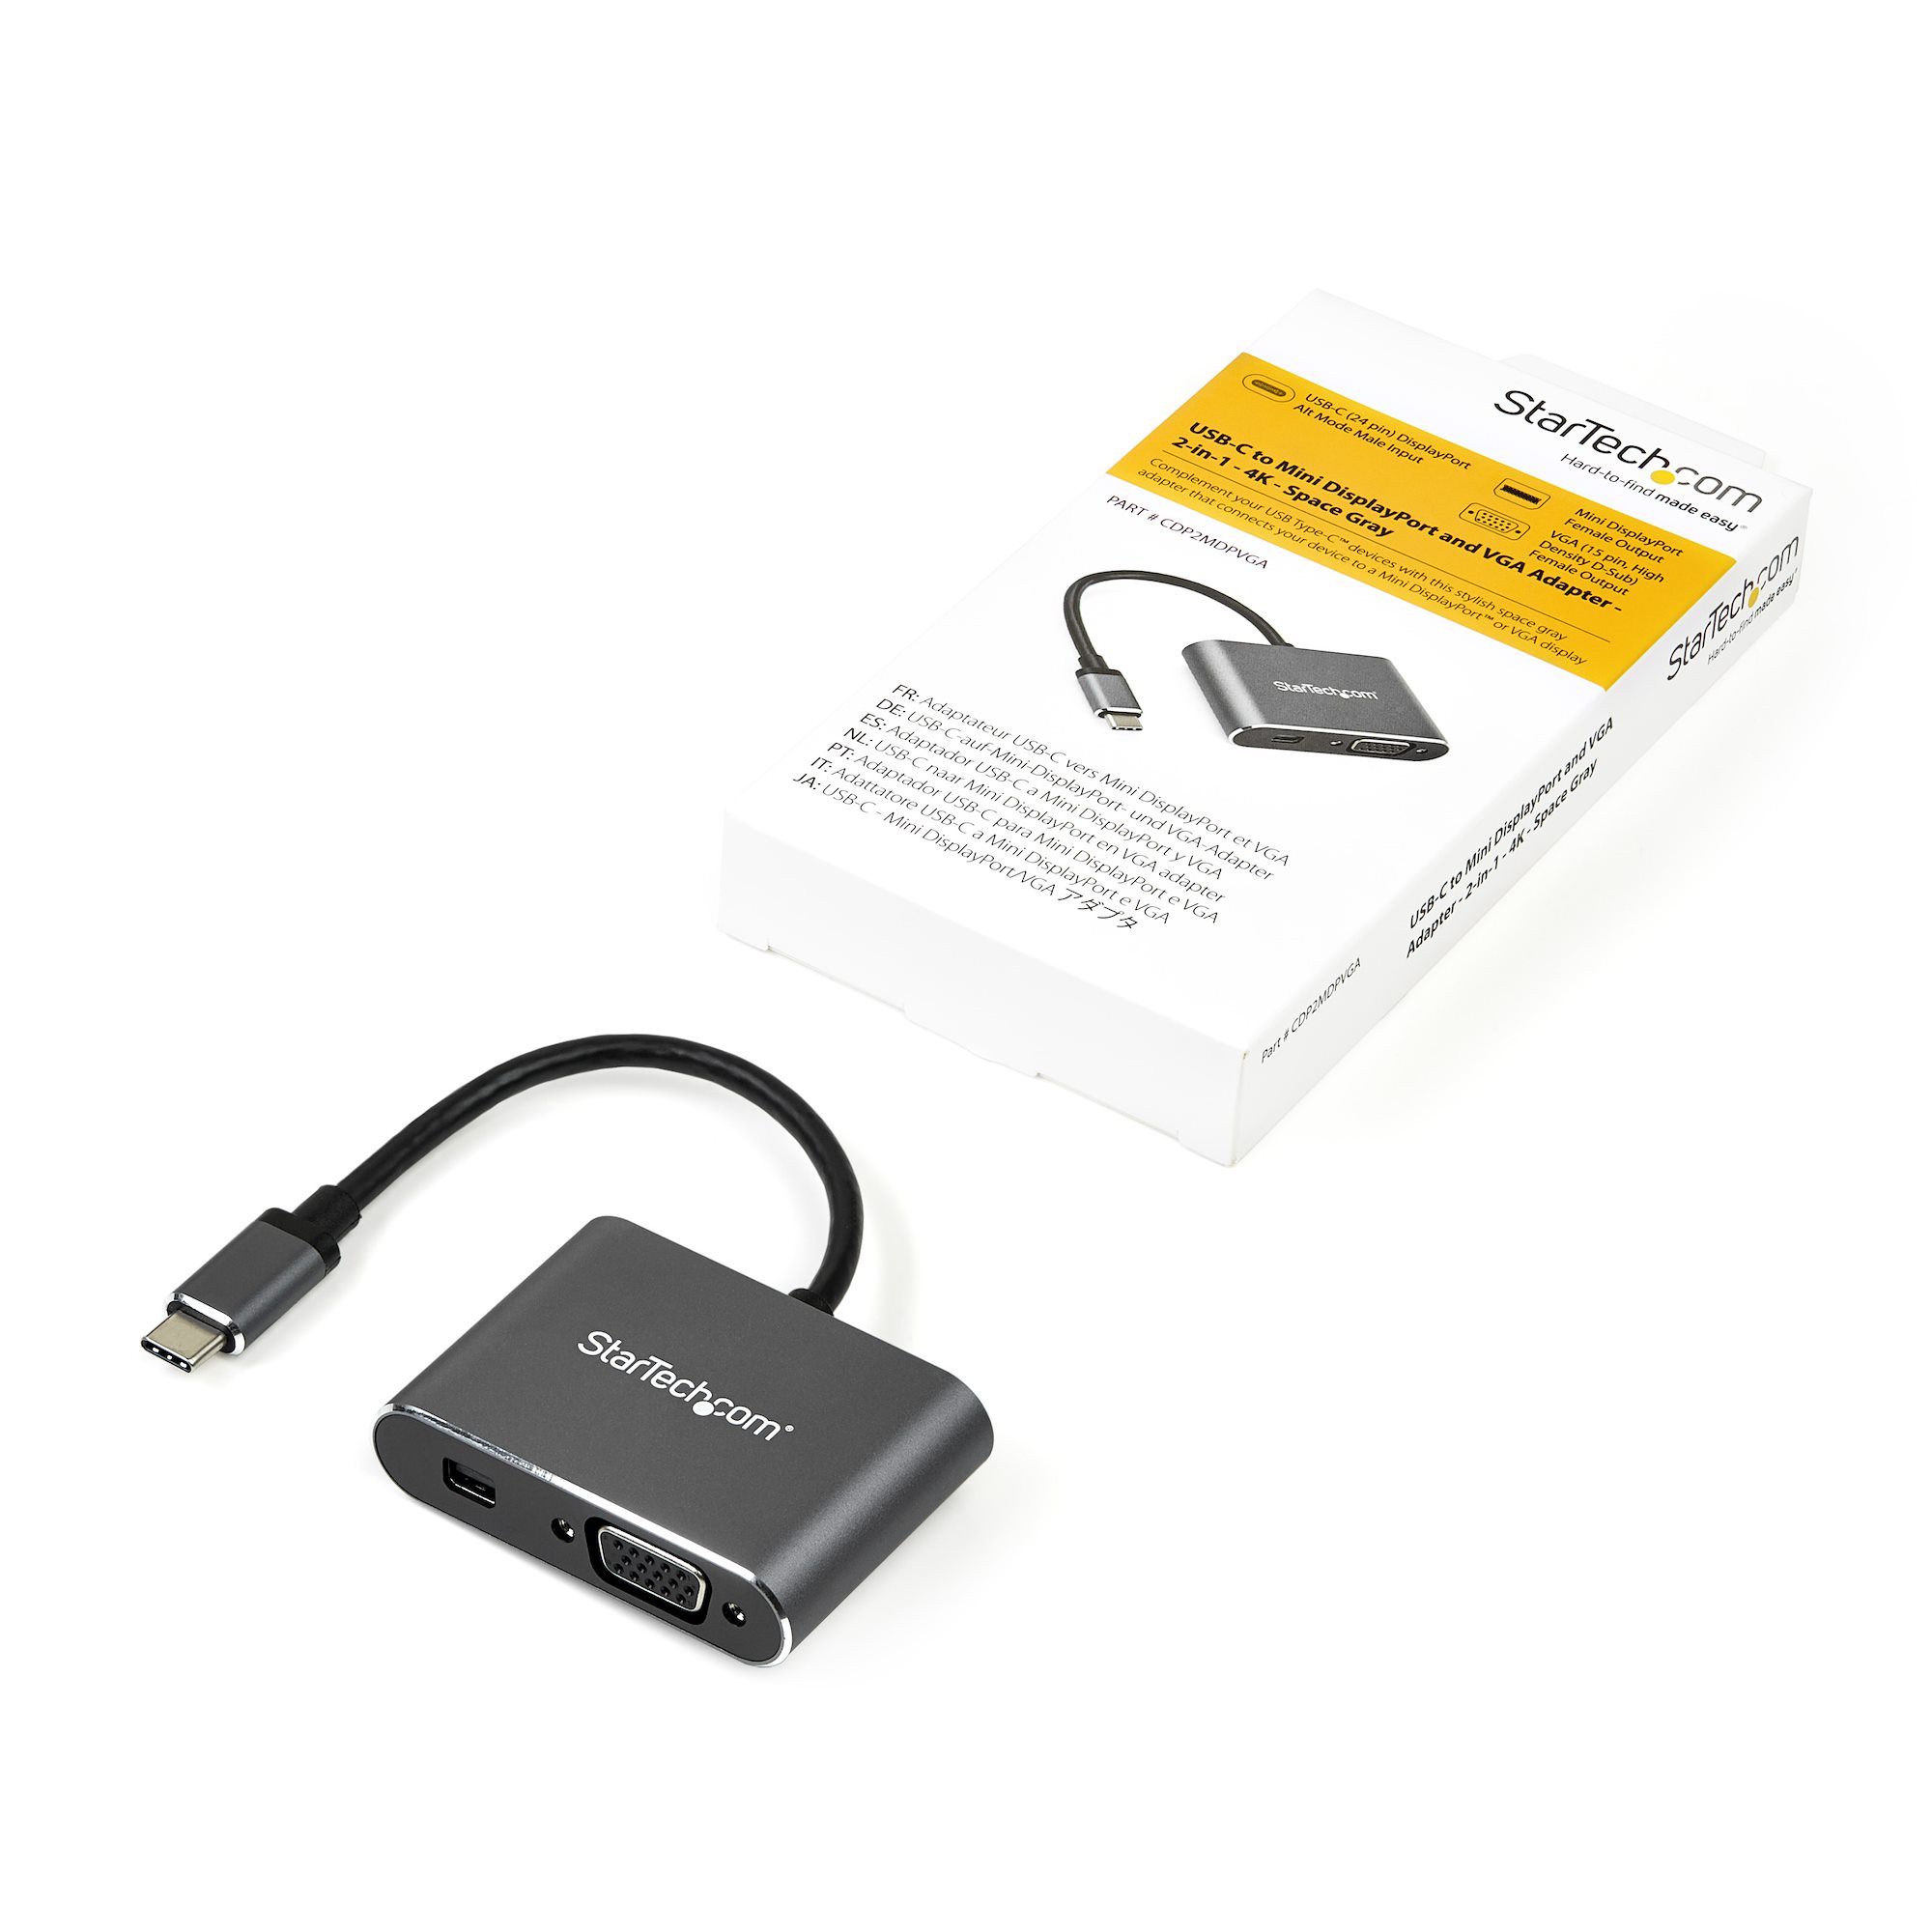 Adaptador USB A Bluetooth COM-206 - H-E-B México